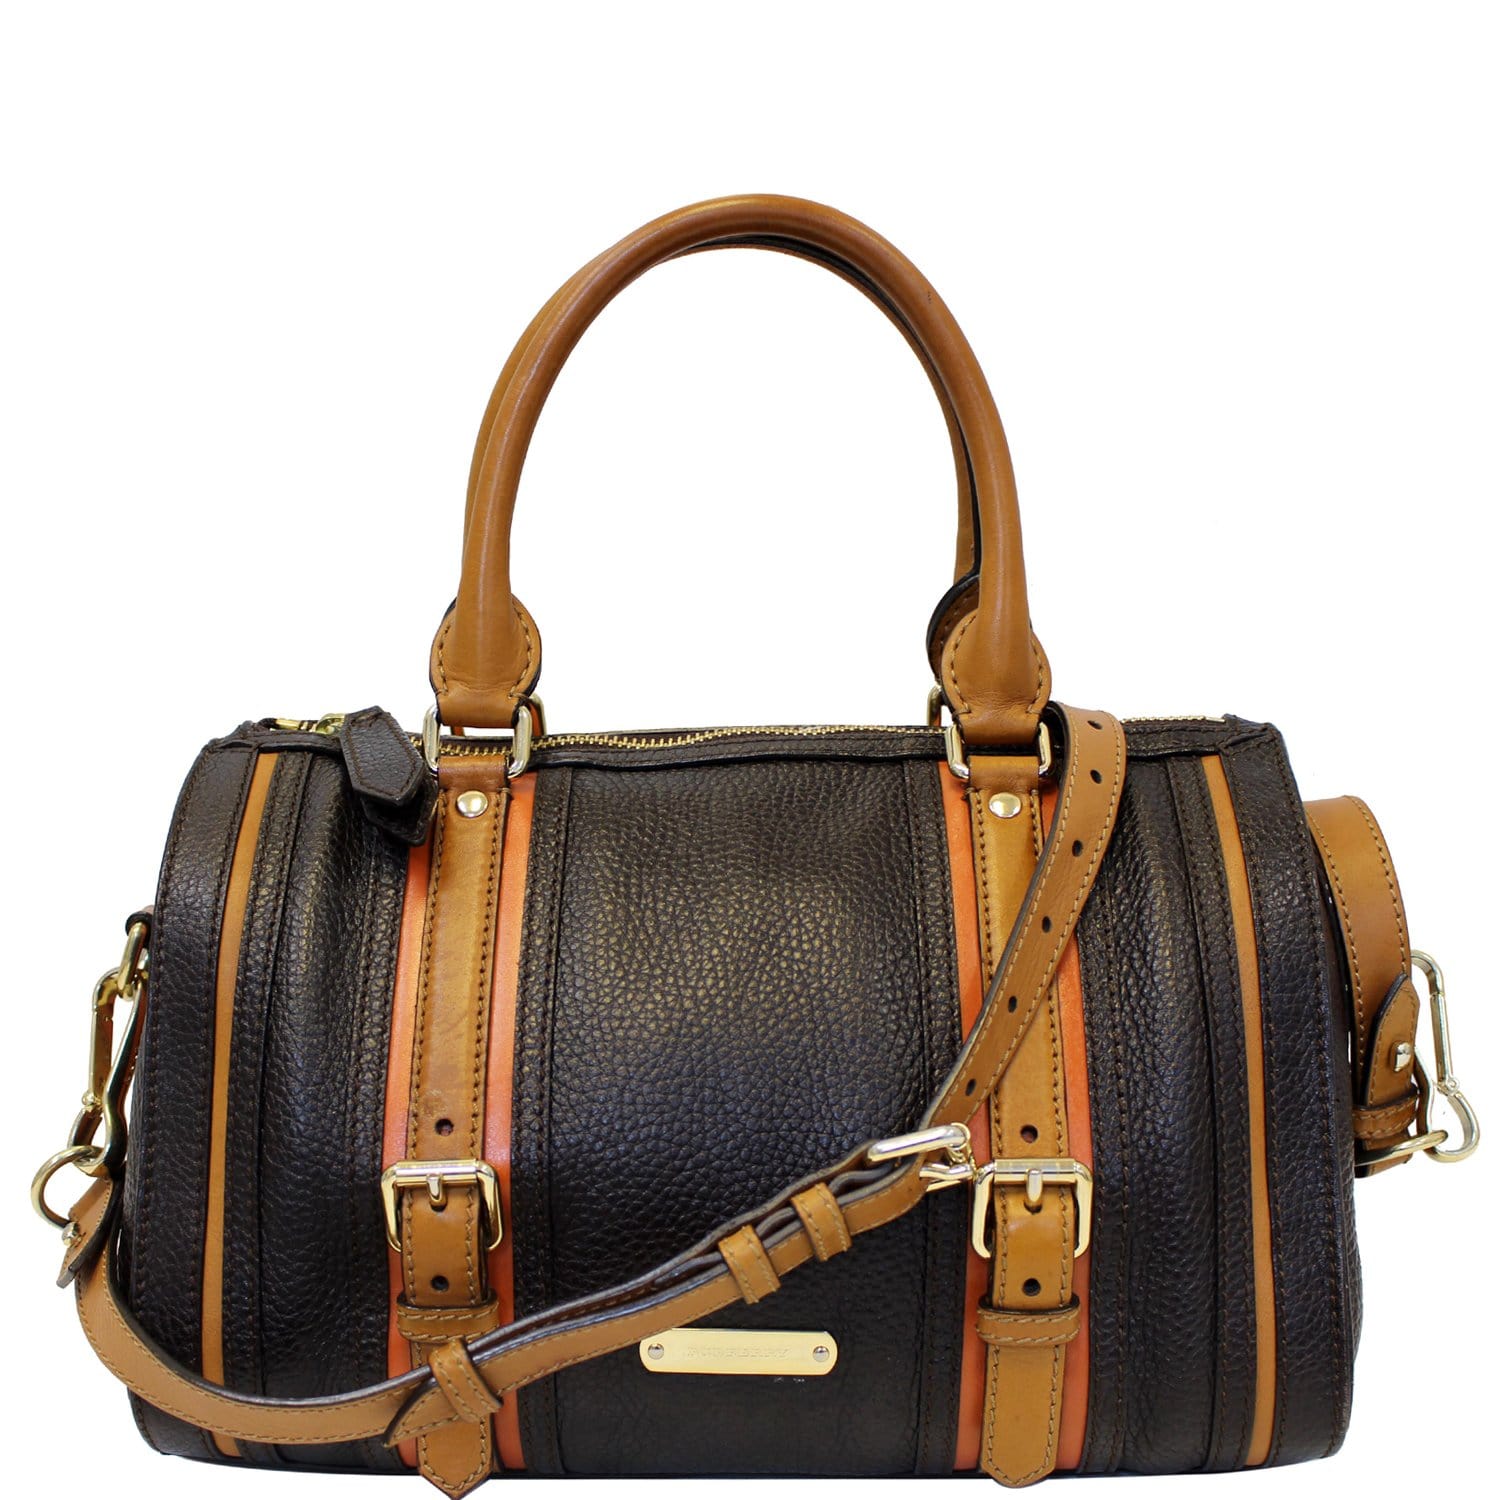 Burberry's Leather Shoulder Bag - Black Shoulder Bags, Handbags - BUR381011